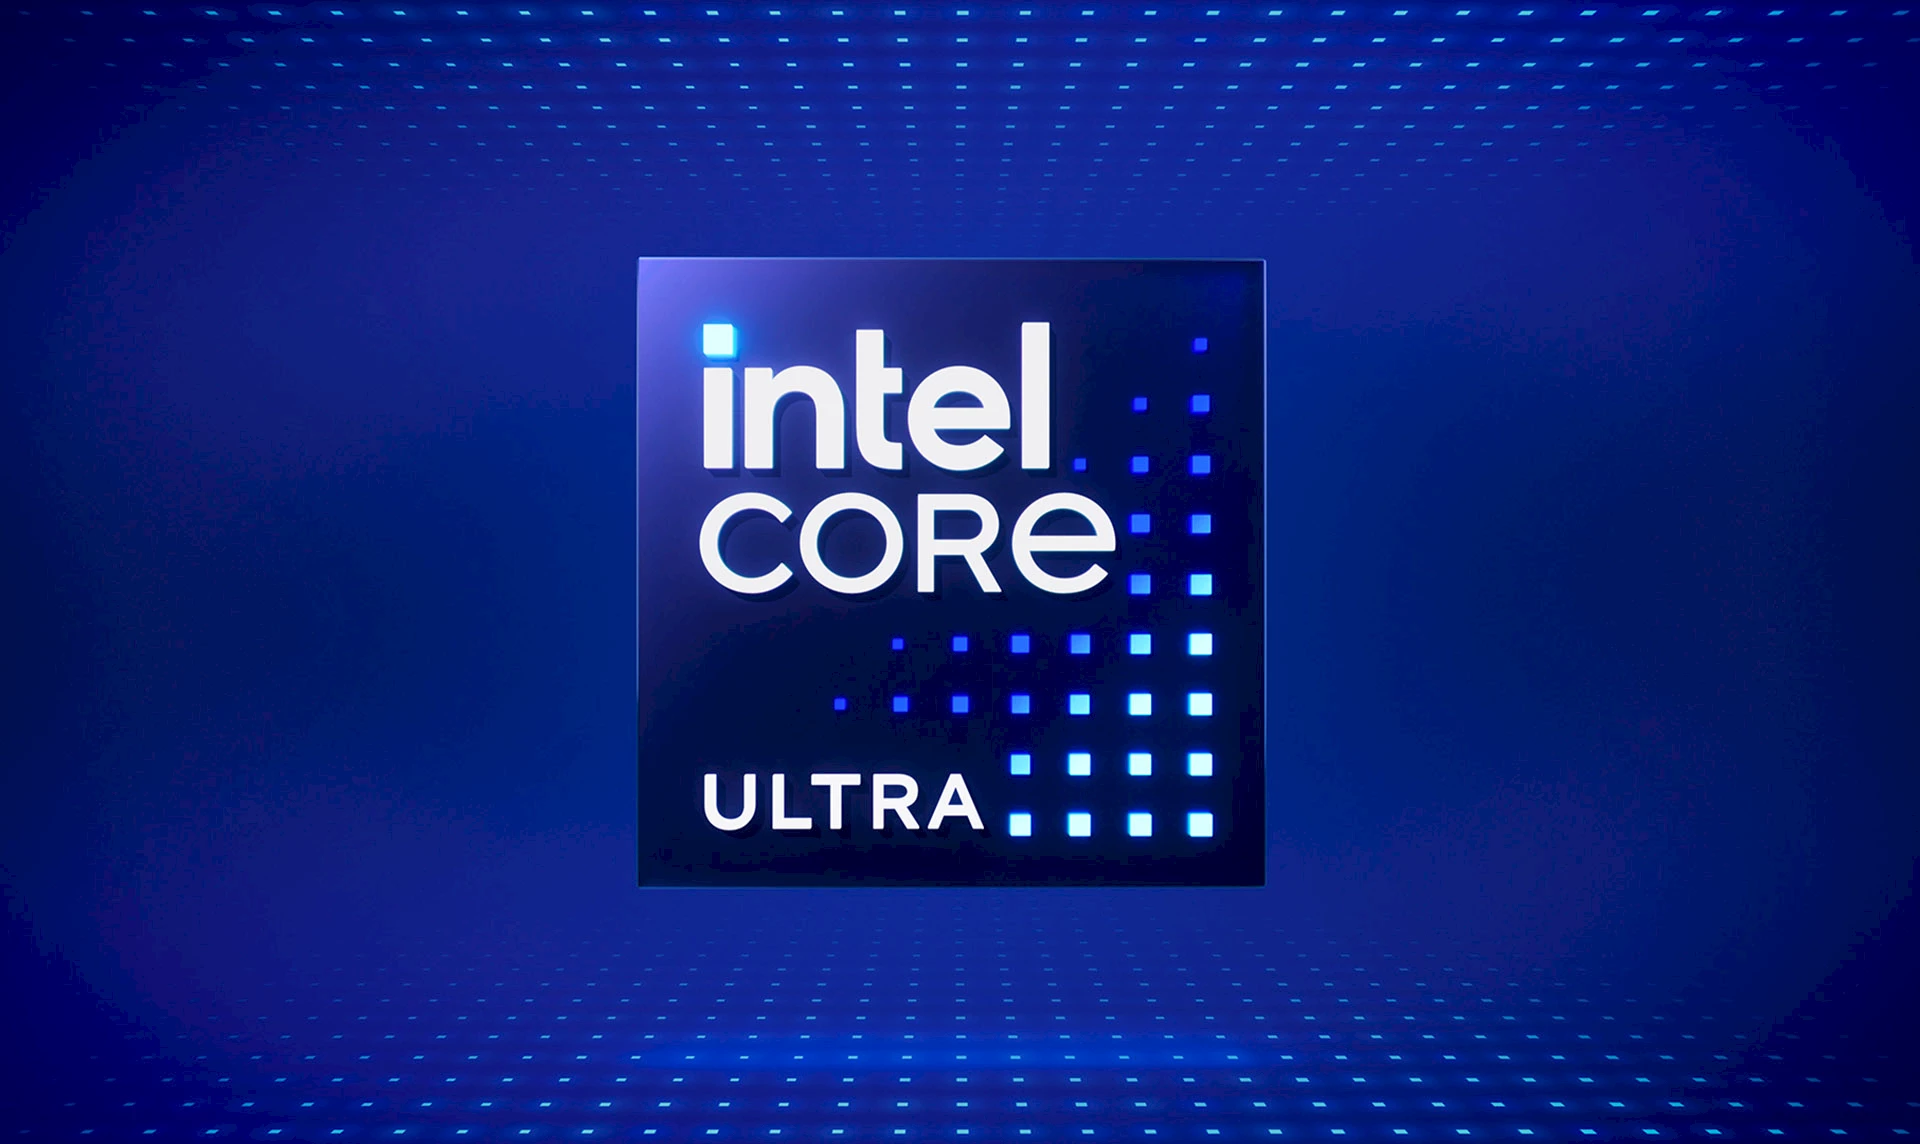 Intel® Core™ Ultra.